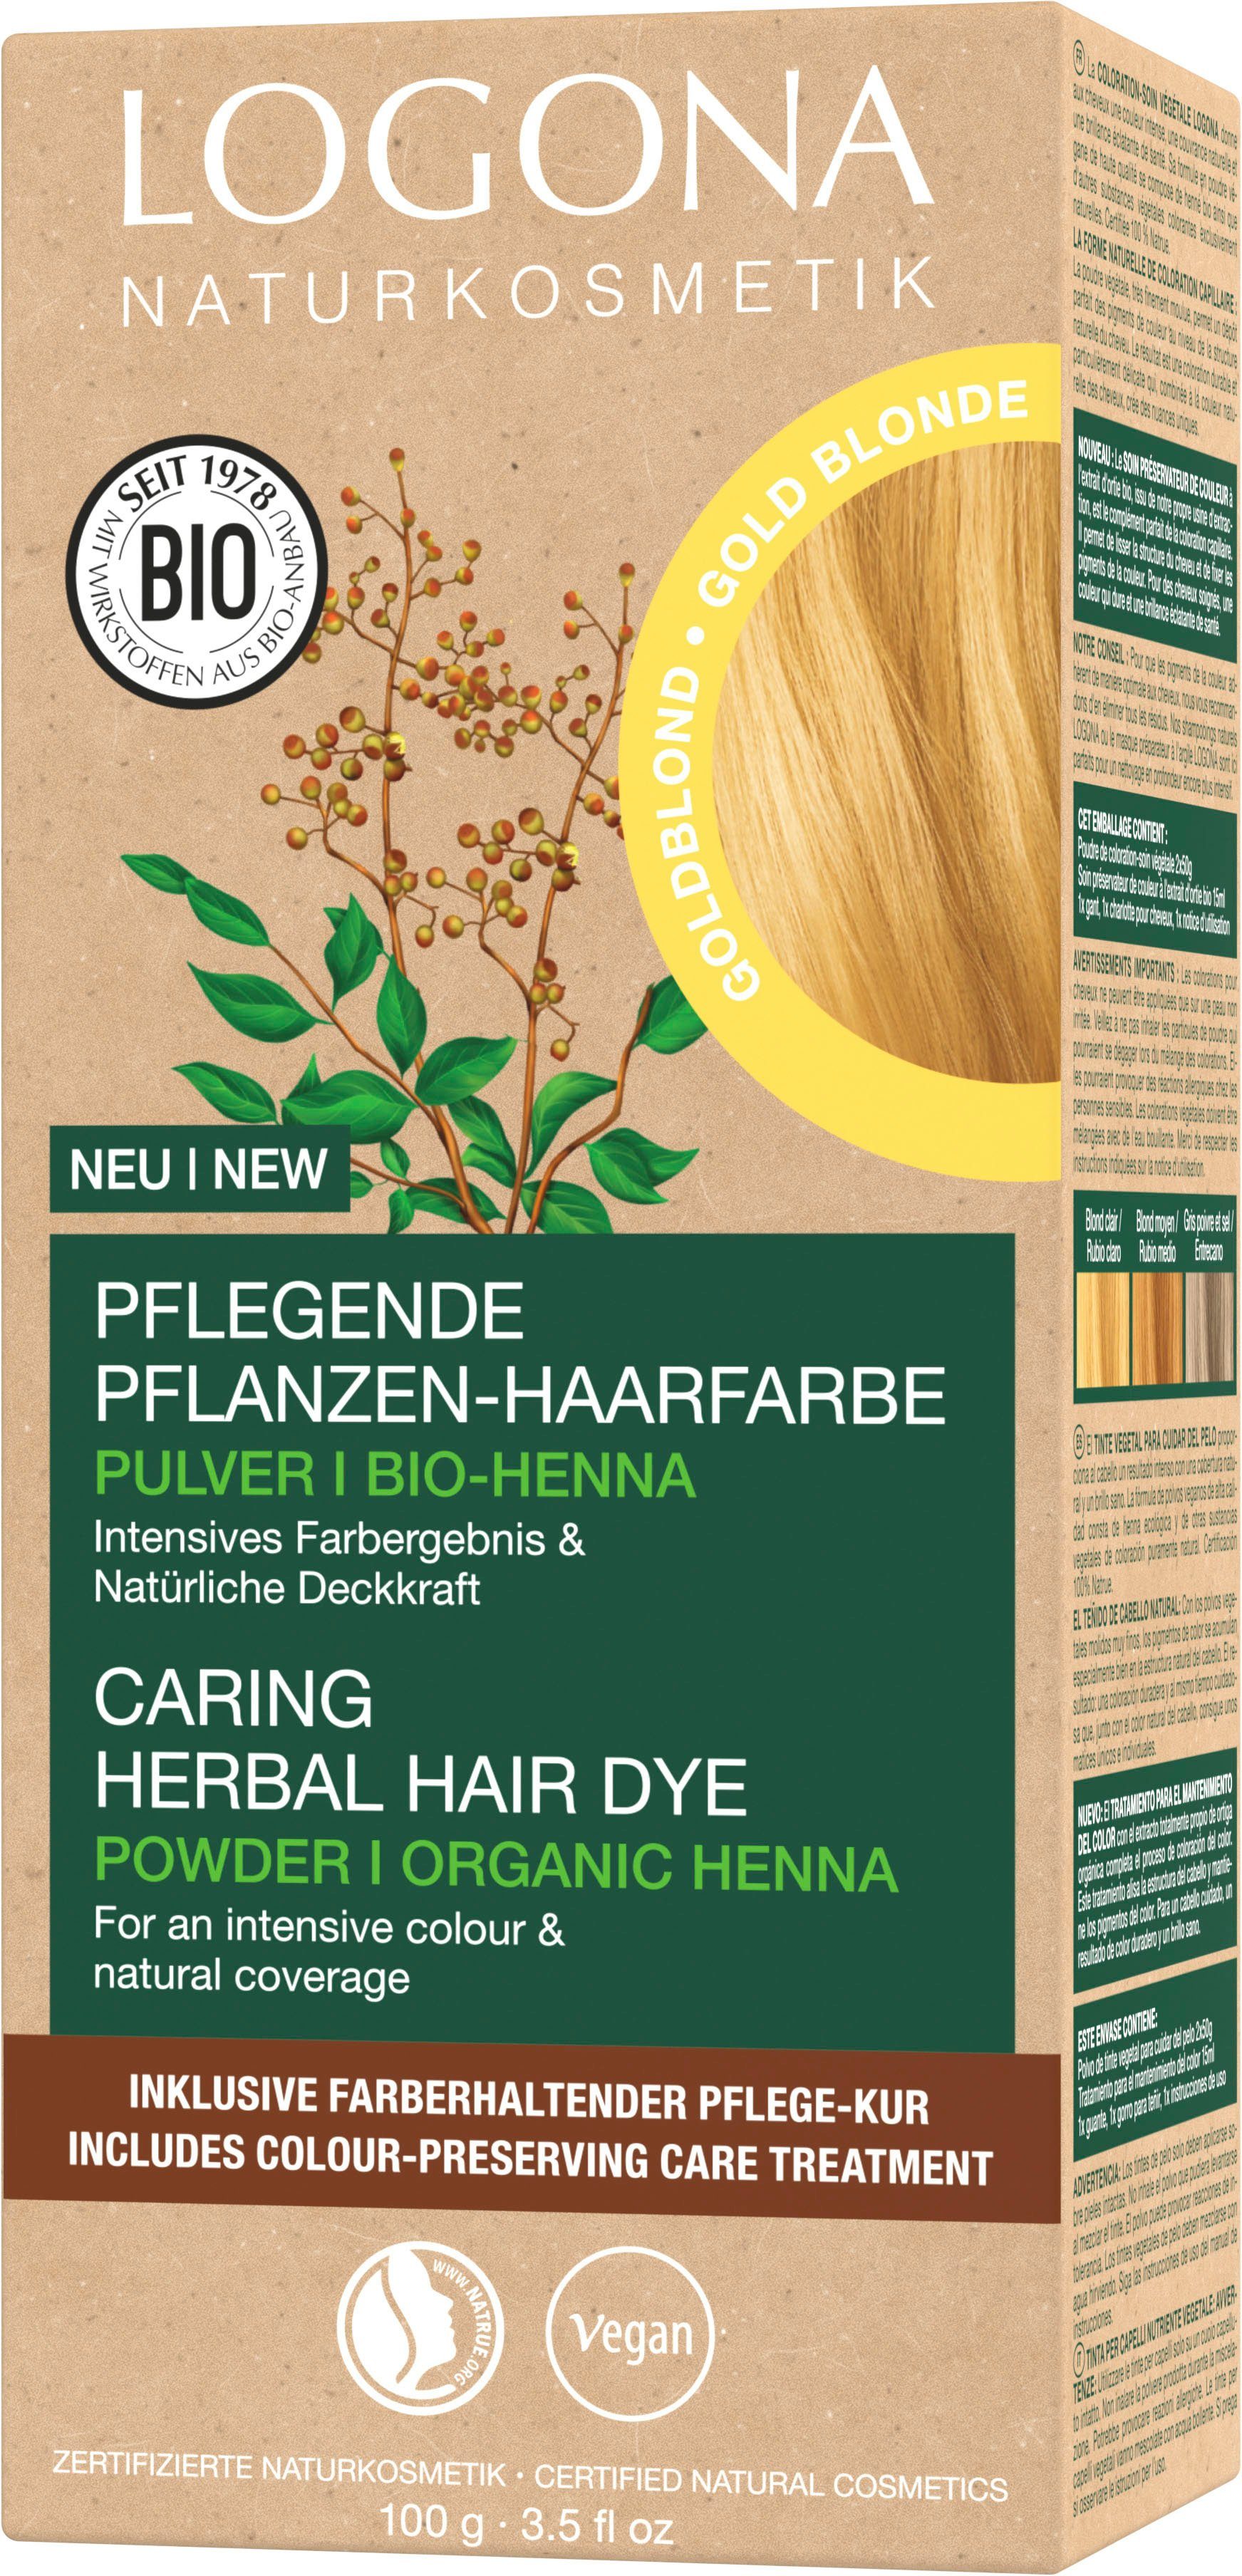 01 Haarfarbe Pflanzen-Haarfarbe Pulver Goldblond LOGONA